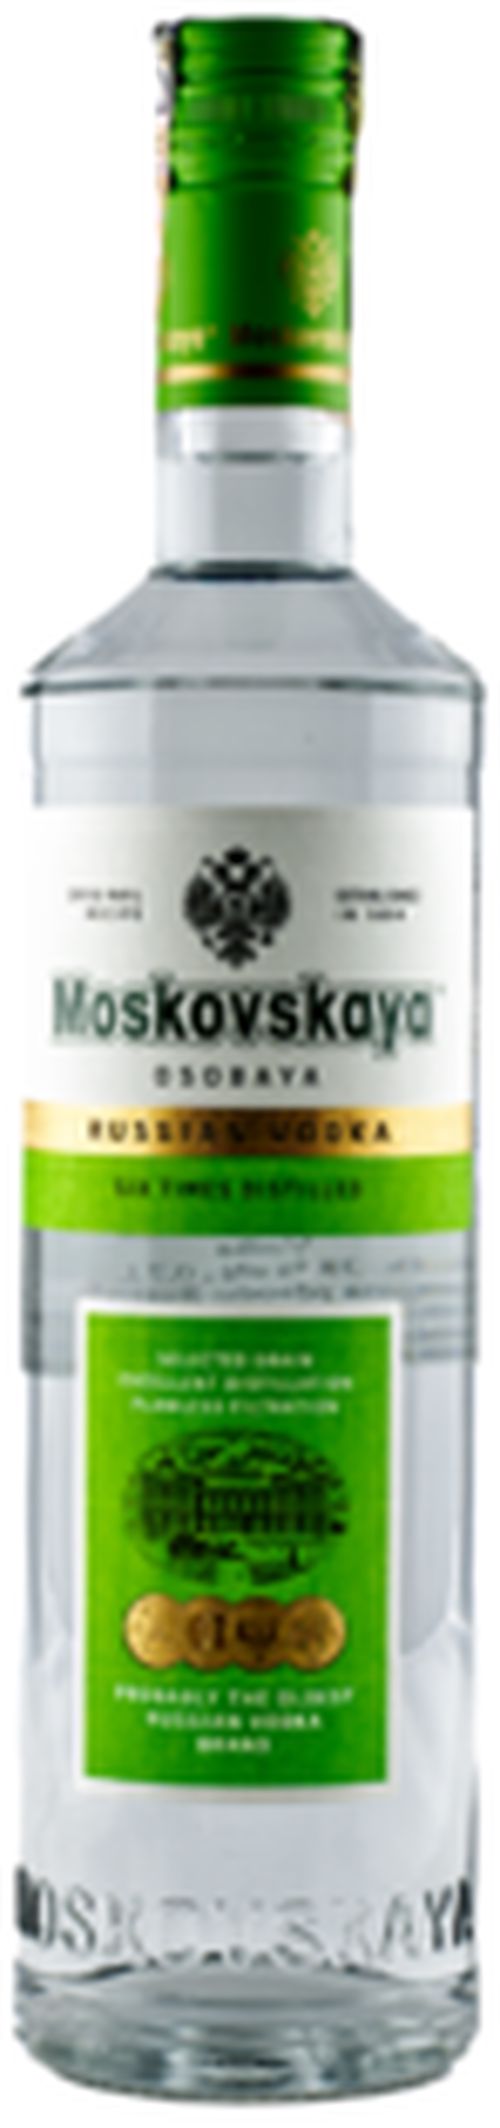 Moskovskaya Osobaya Premium 38% 0.7L